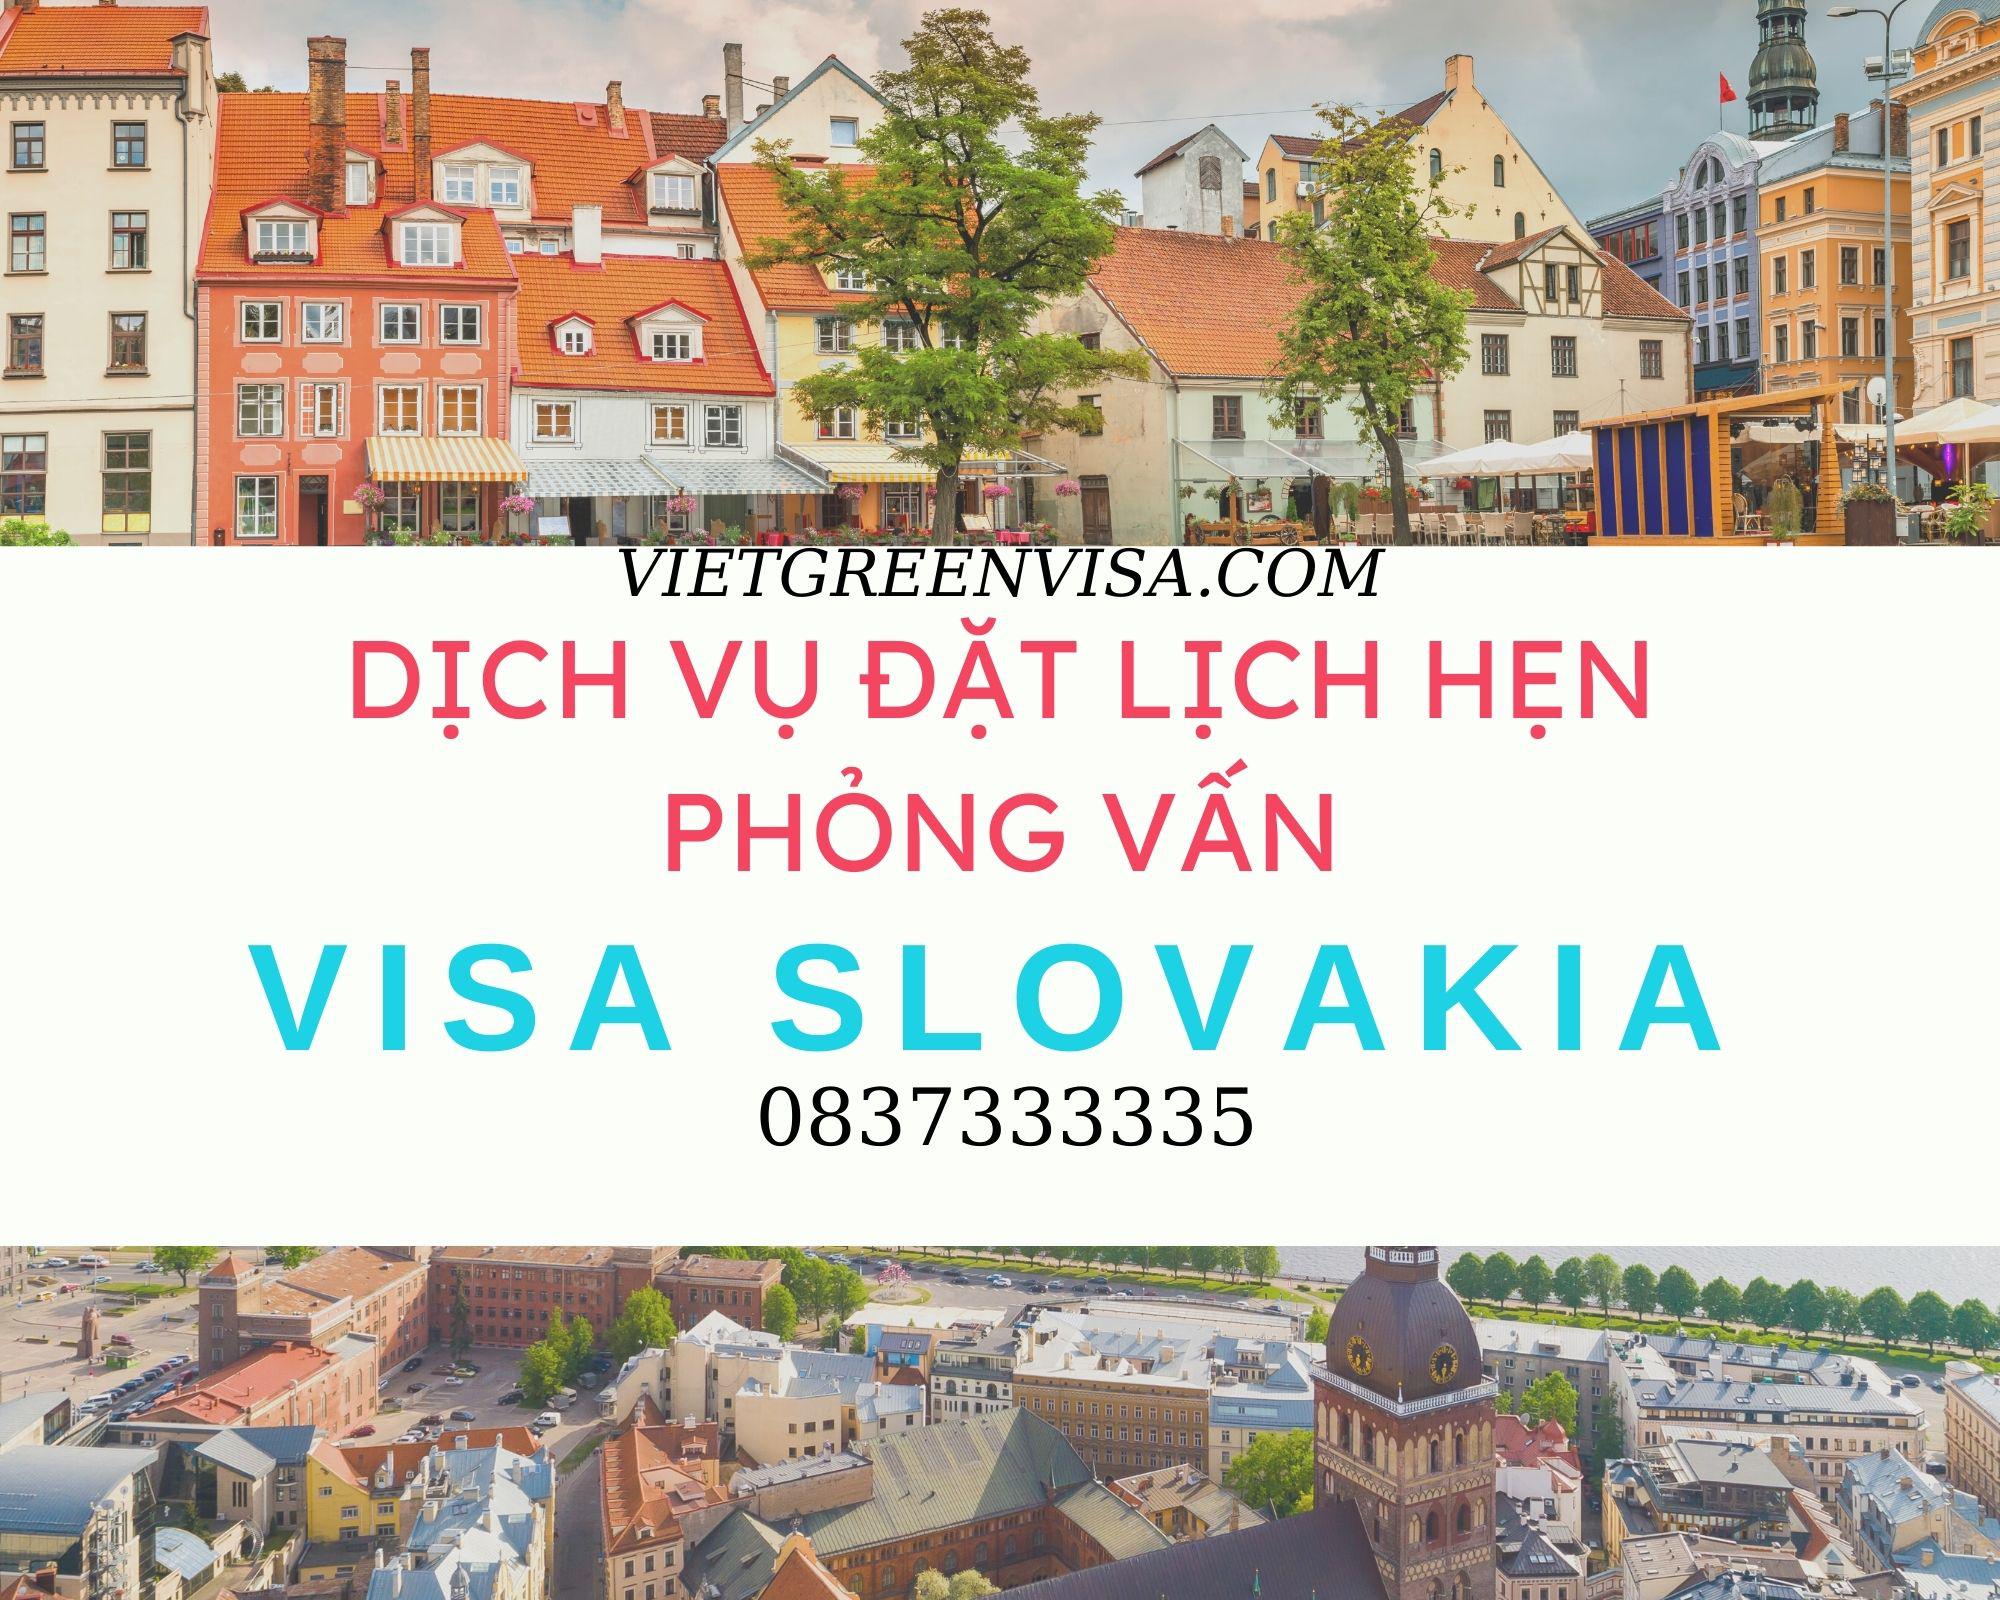 Đặt lịch hẹn phỏng vấn visa Slovakia nhanh chóng